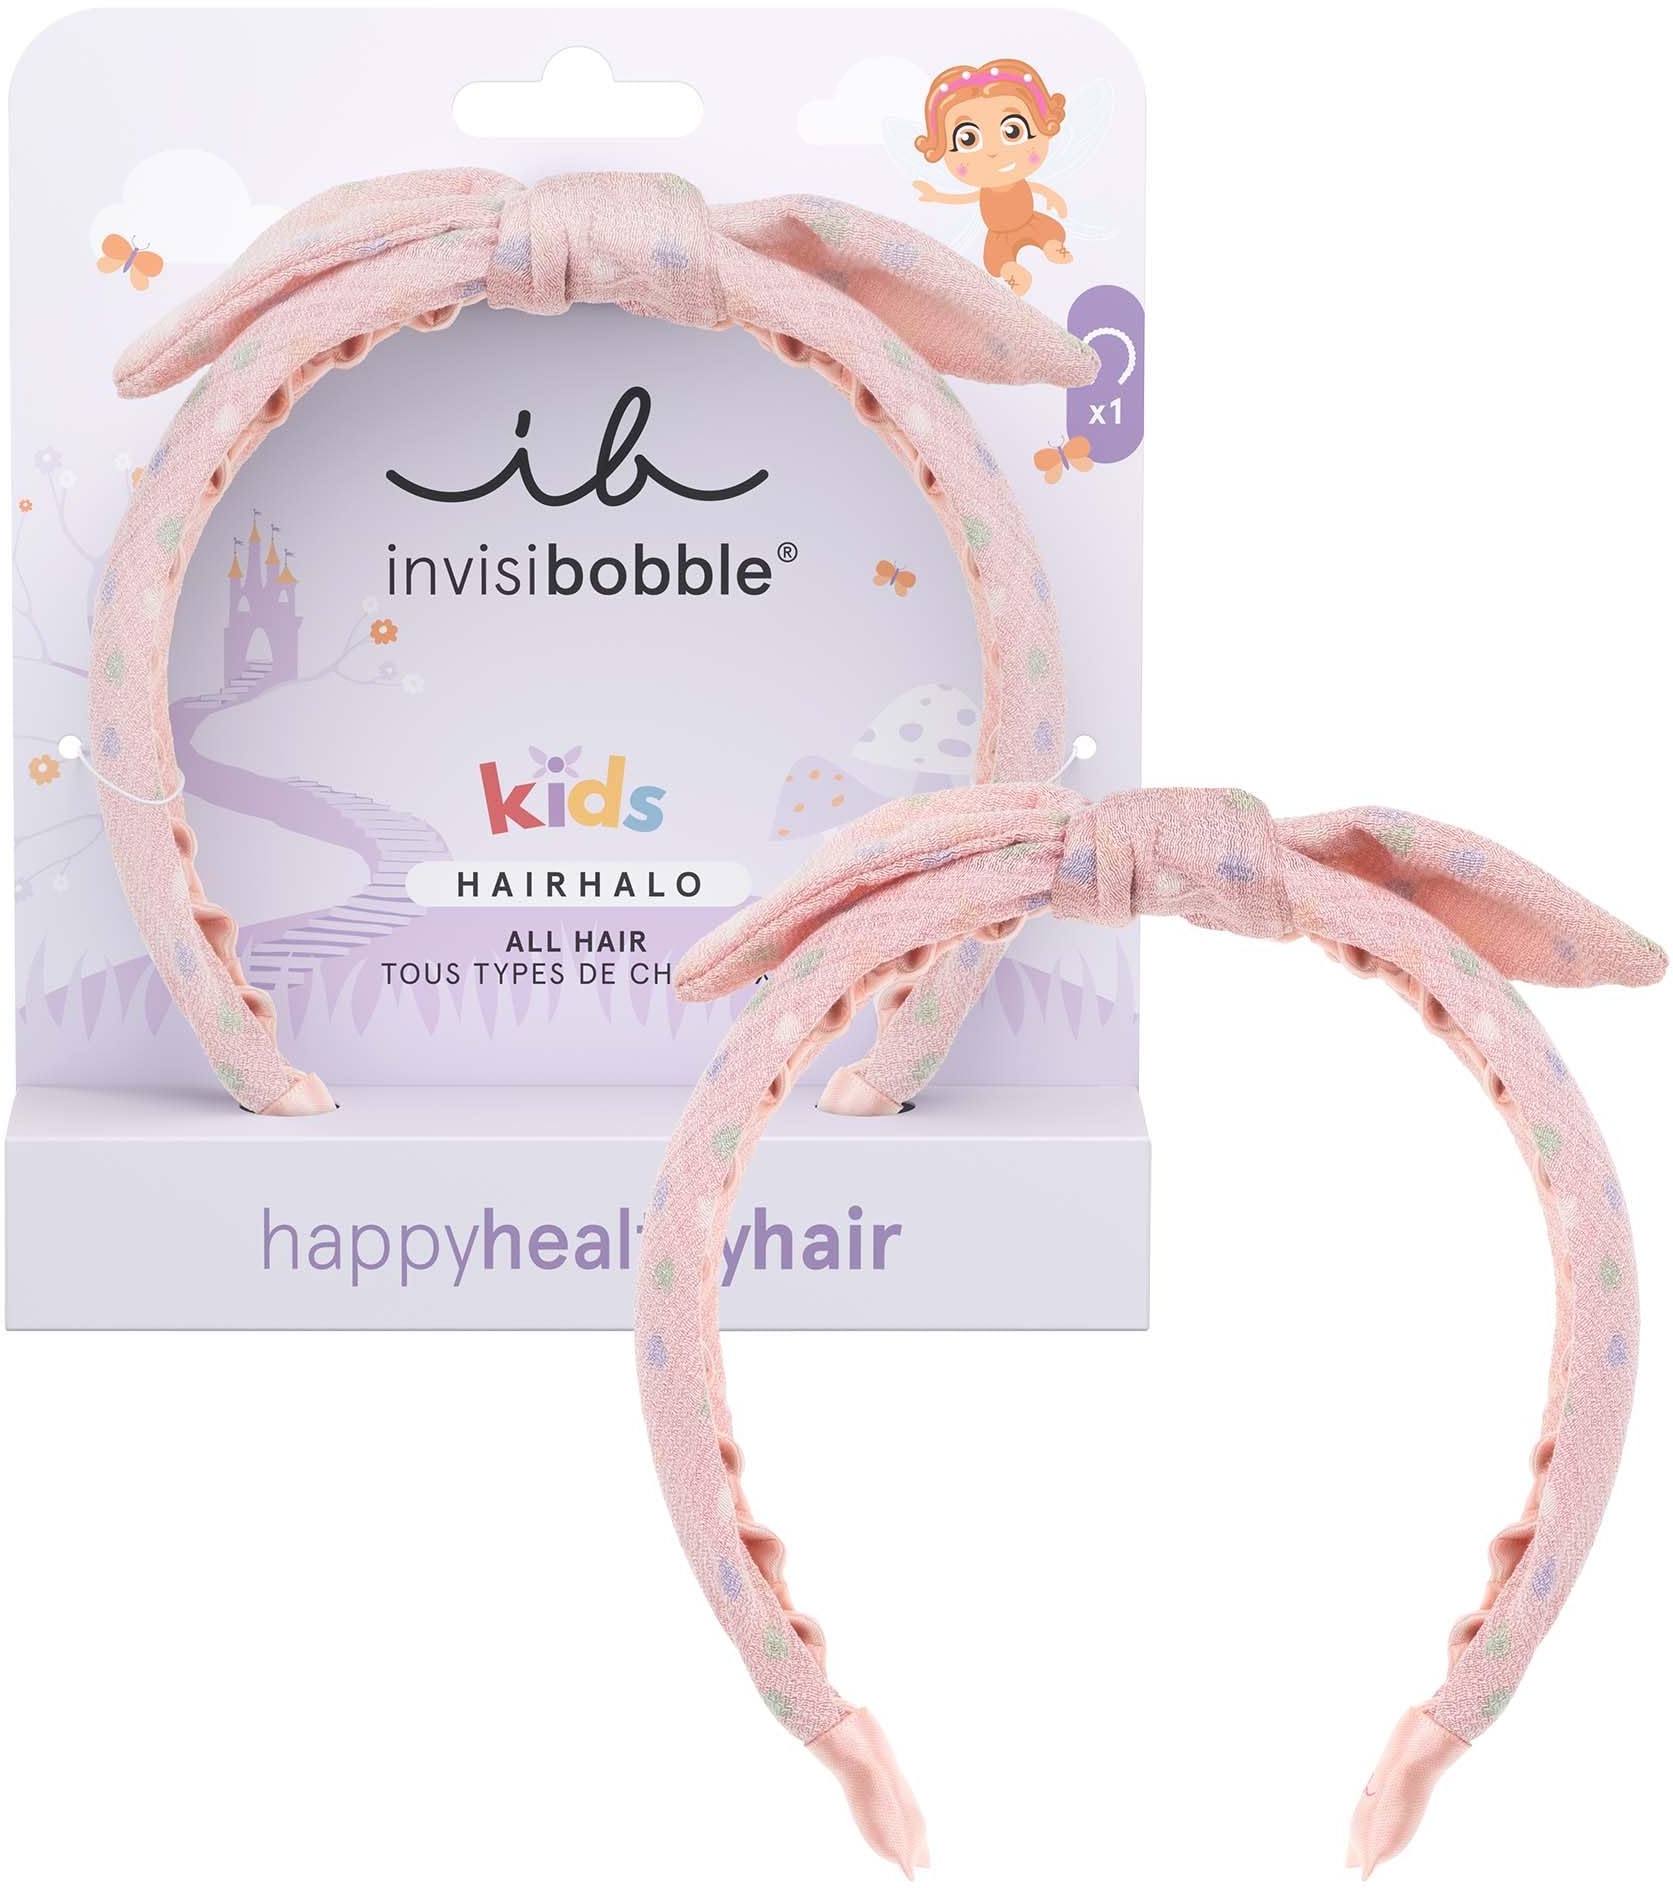 Invisibobble Hairhalo Kids x1 Haarreif für Mädchen, Rosa, mit Schleife – Haarreif für Mädchen, anpassungsfähige Form, für Babys, Mädchen, mit starkem Halt